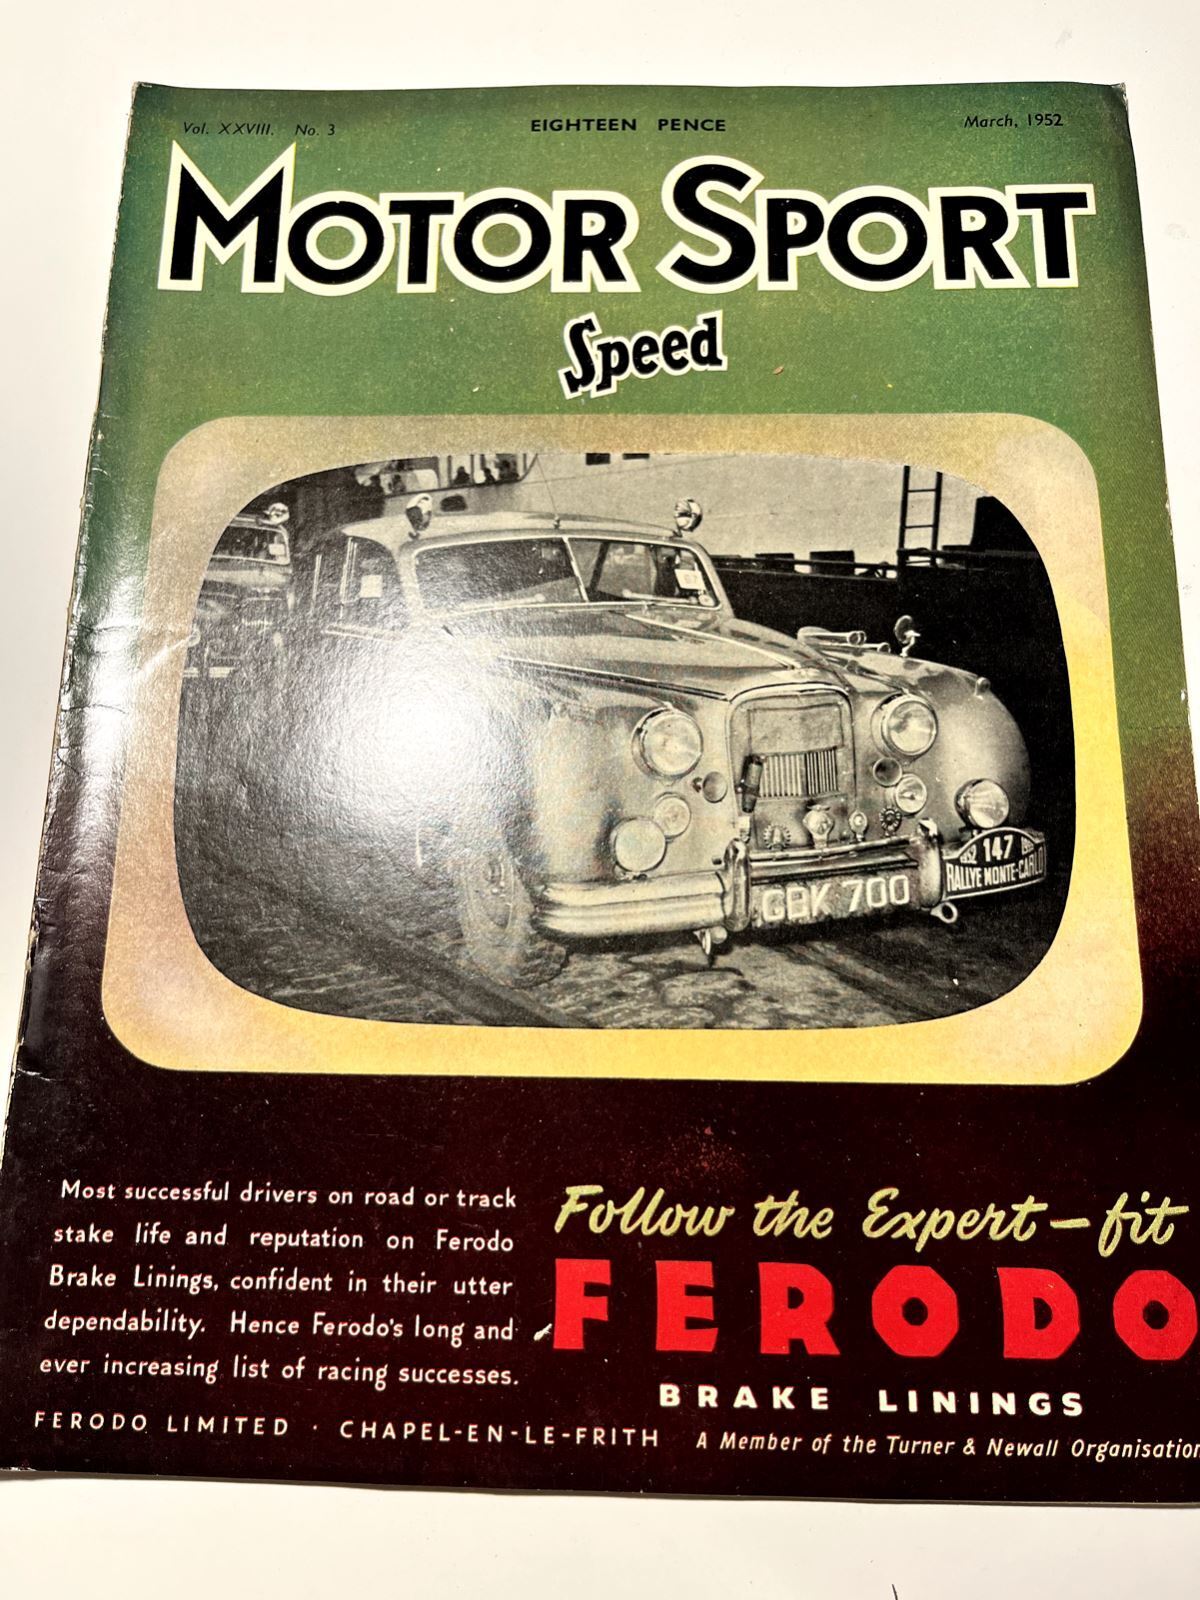 Vintage Motor Sport Speed Magazine Vol. XXVIII, No. 3 March 1952